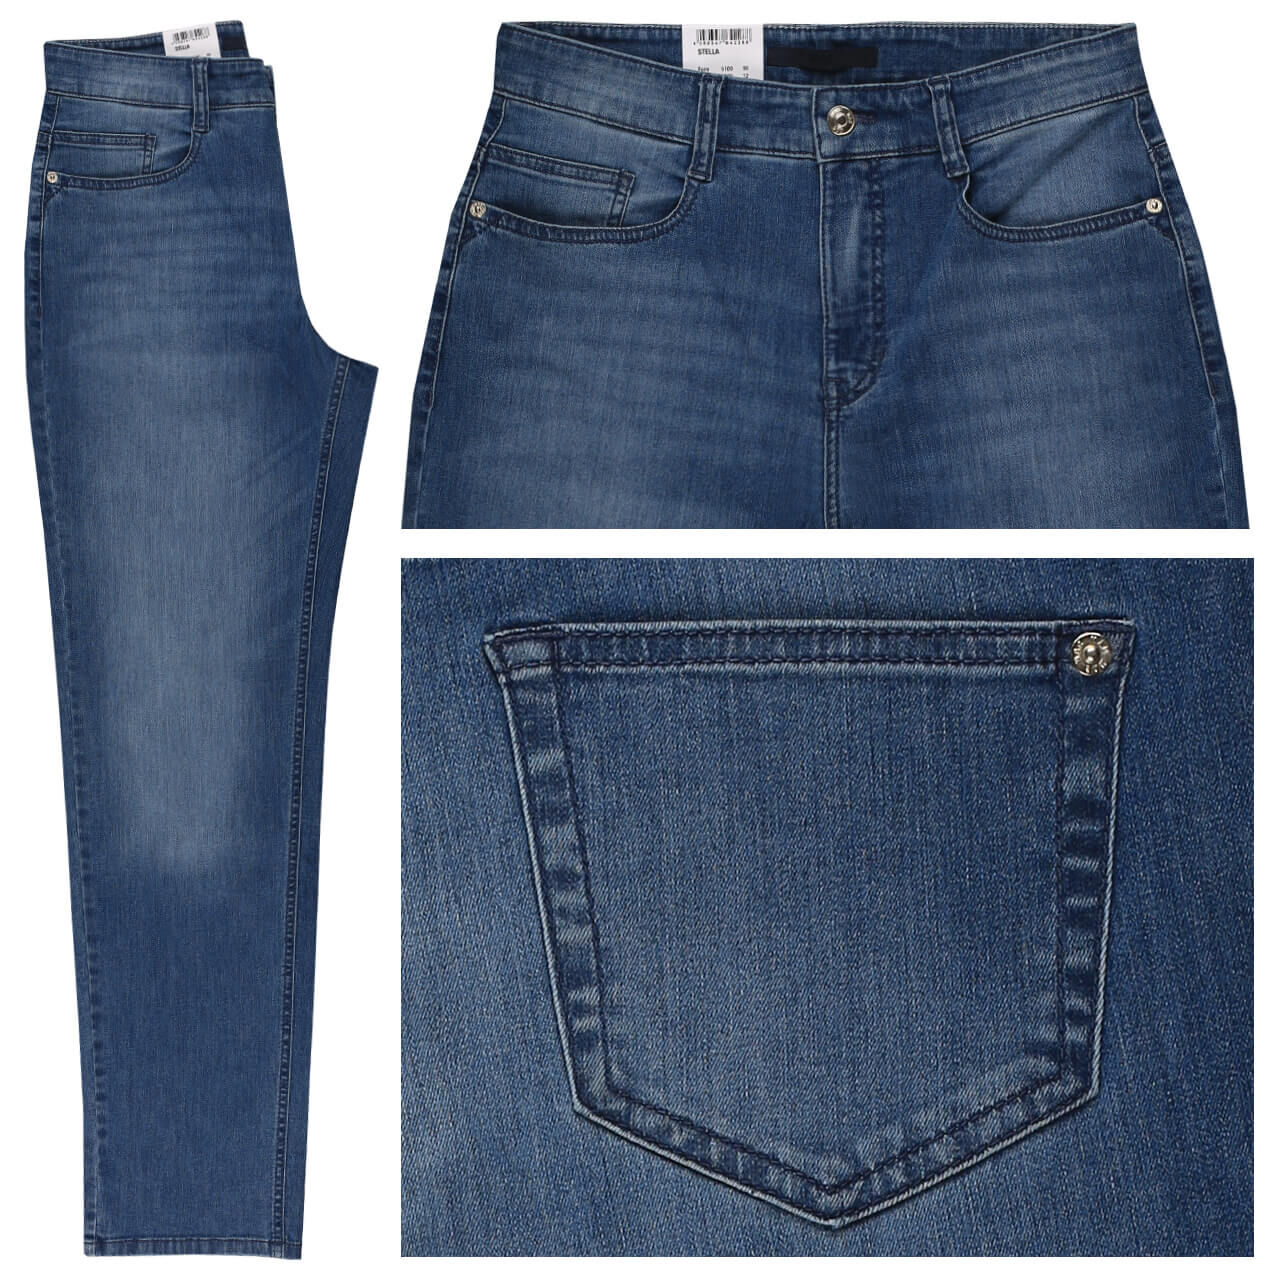 MAC Jeans Stella für Damen in Mittelblau angewaschen, FarbNr.: D546